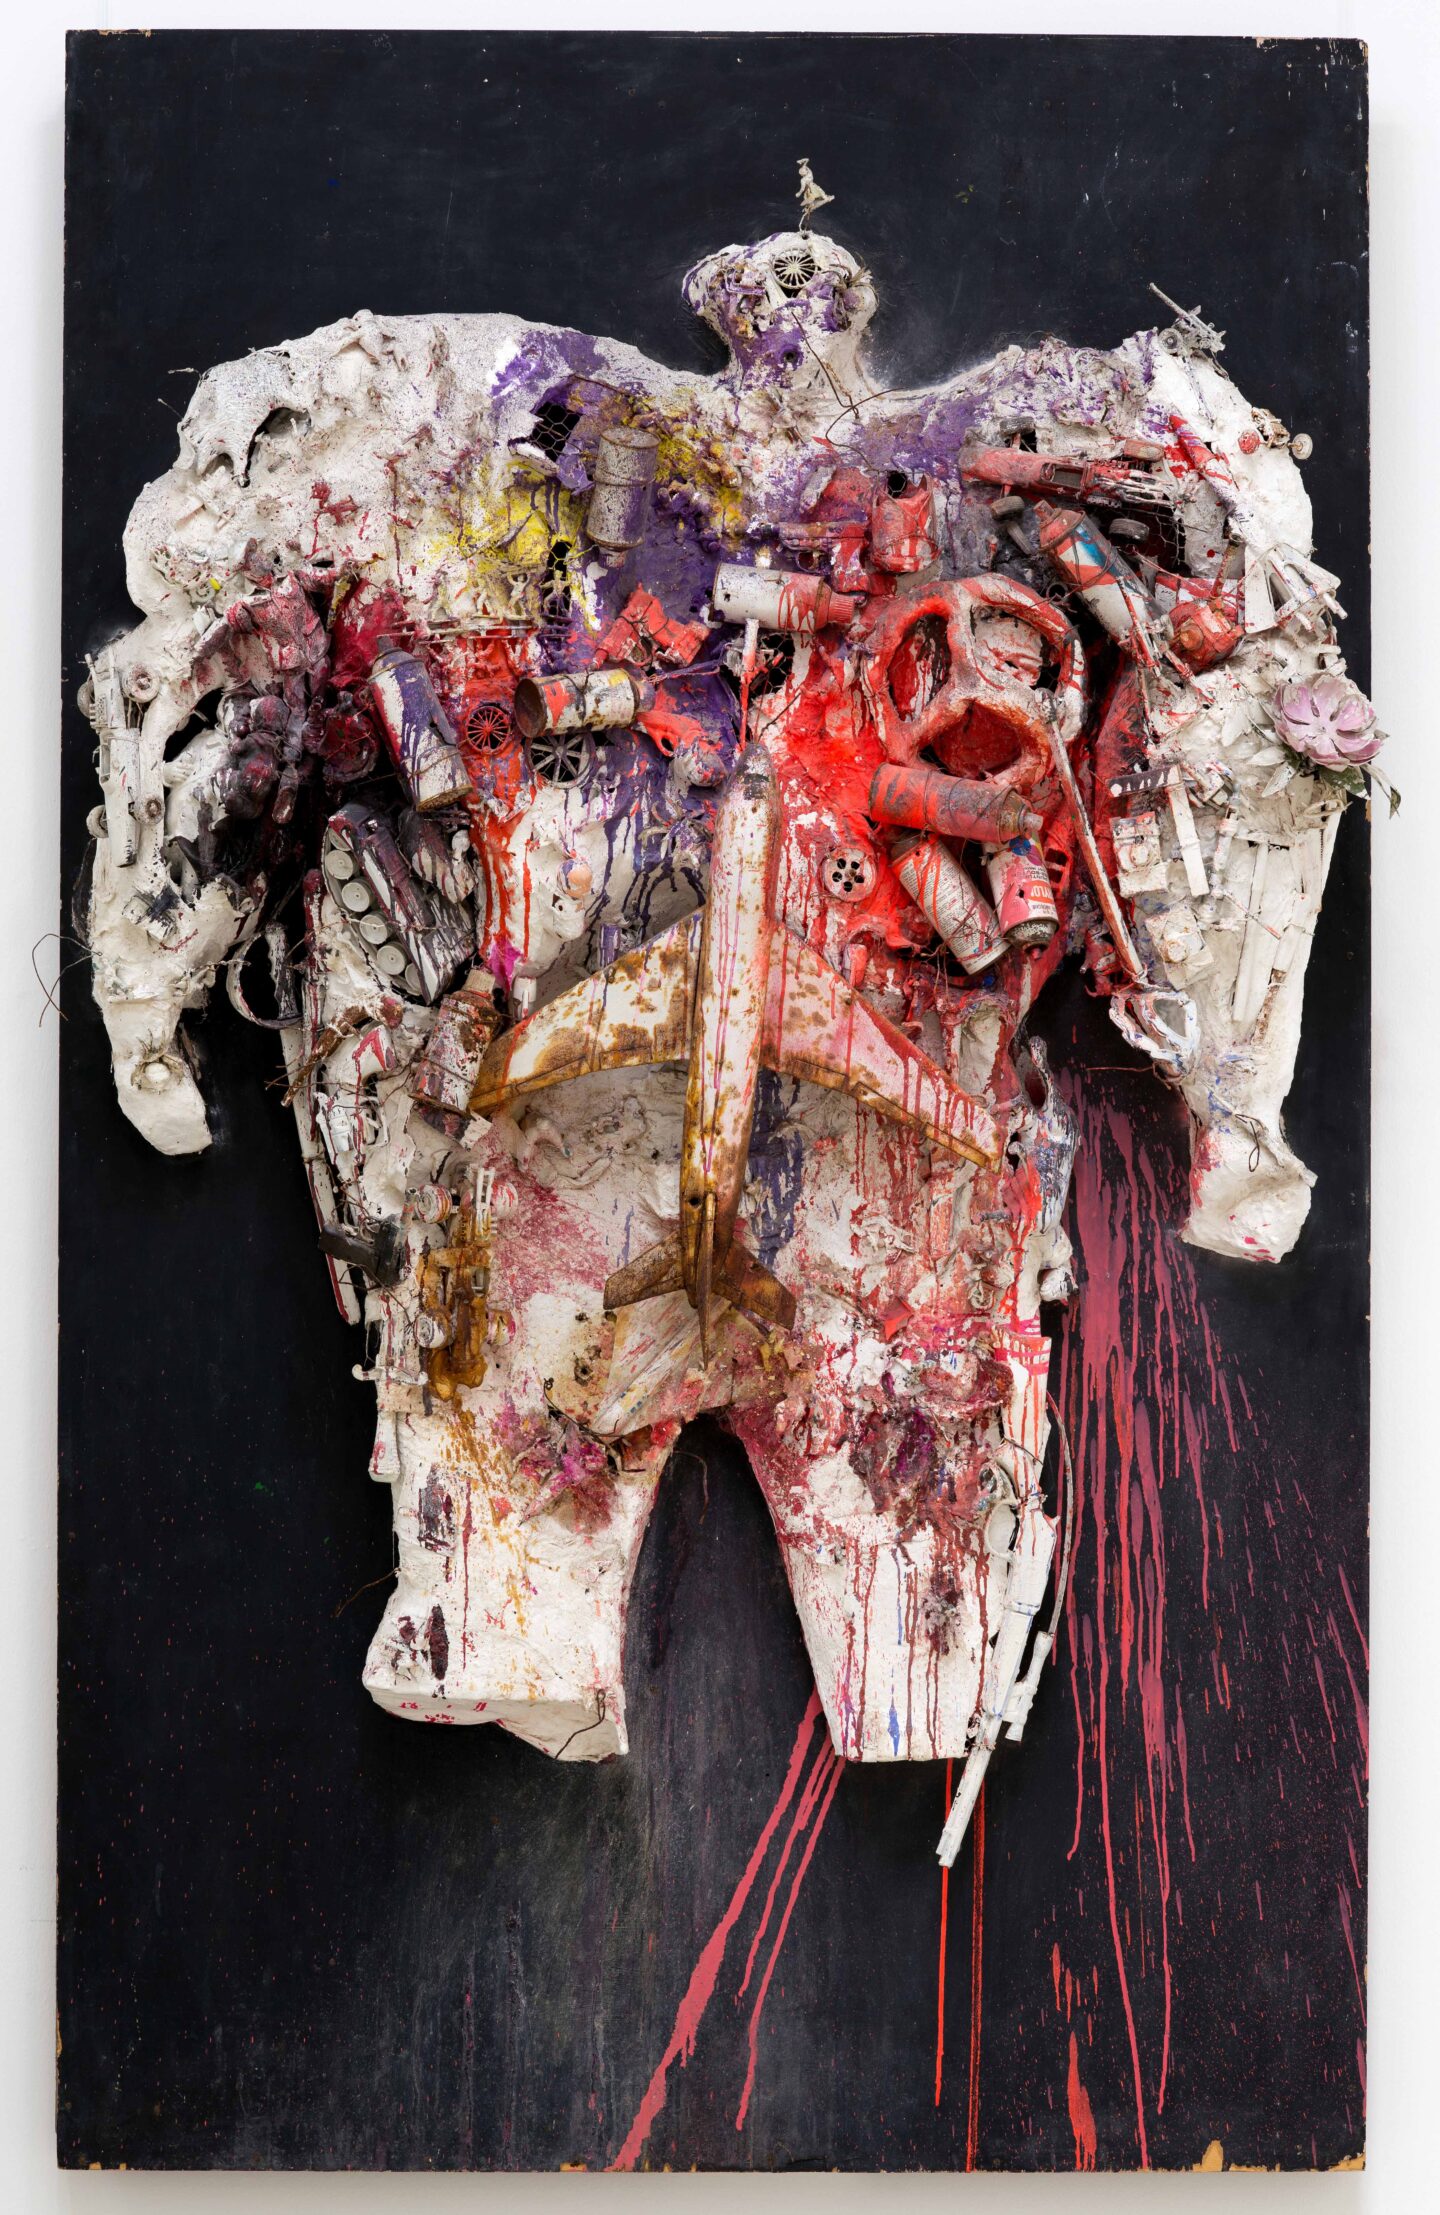 Die schießende Feministin: Niki de Saint Phalle
Schießbild, Gipsfigur mit Farbbeuteln, Plastikspielzeug in der kunst, assemblage
